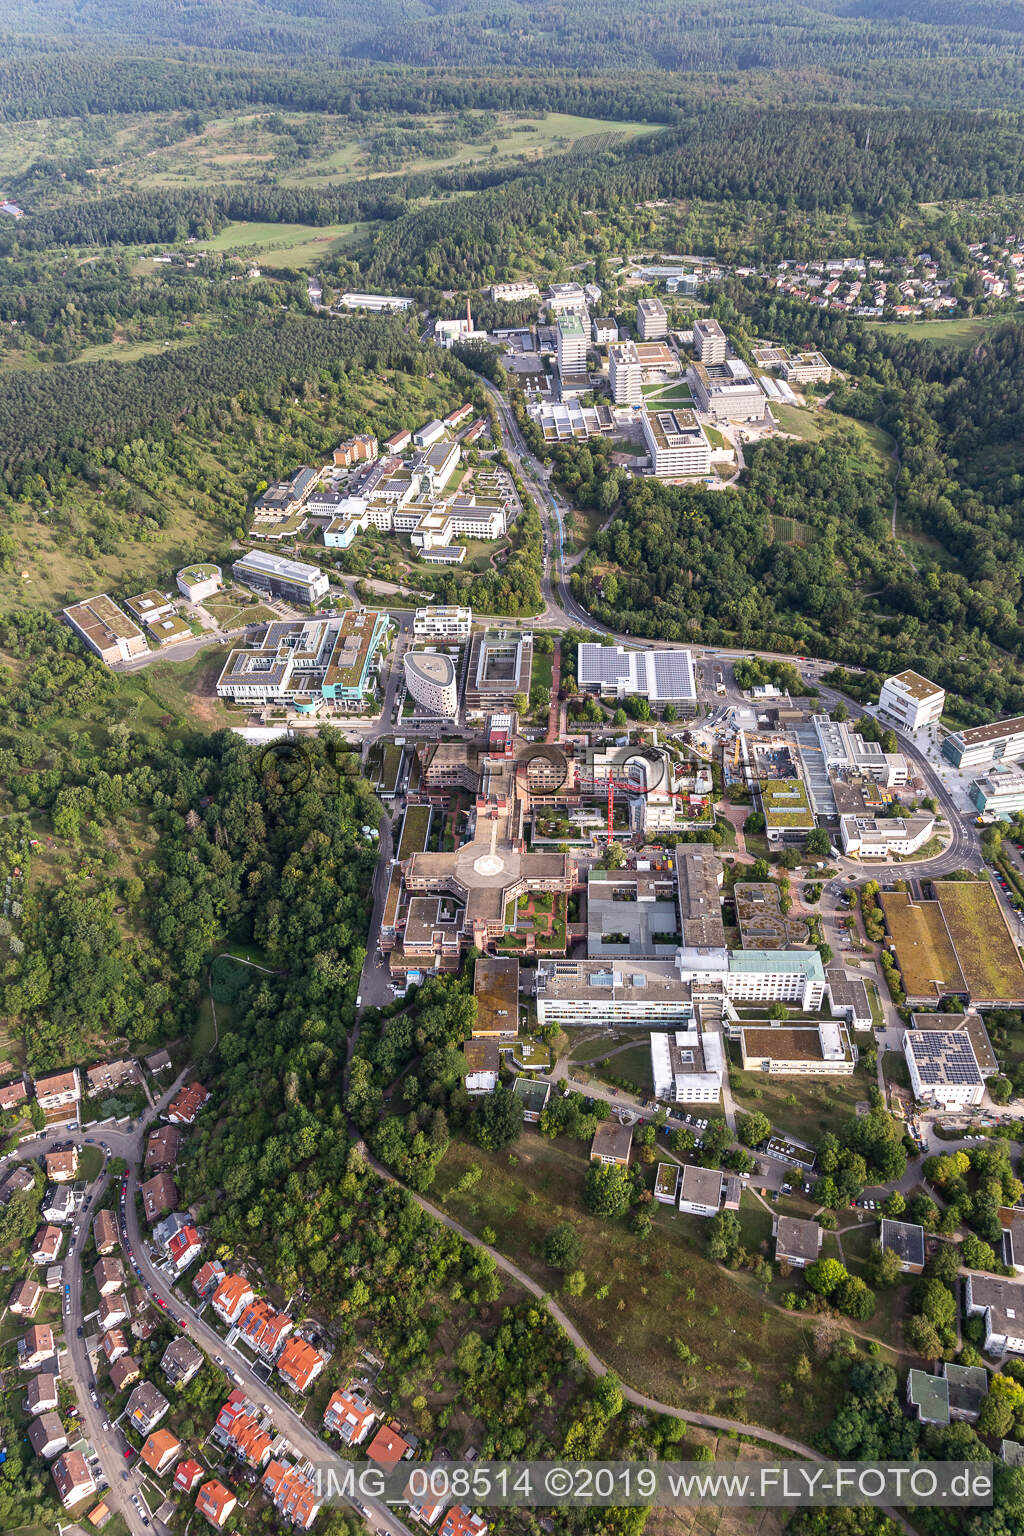 Clinique BG, Université et Hôpital Universitaire Tübingen à Tübingen dans le département Bade-Wurtemberg, Allemagne hors des airs